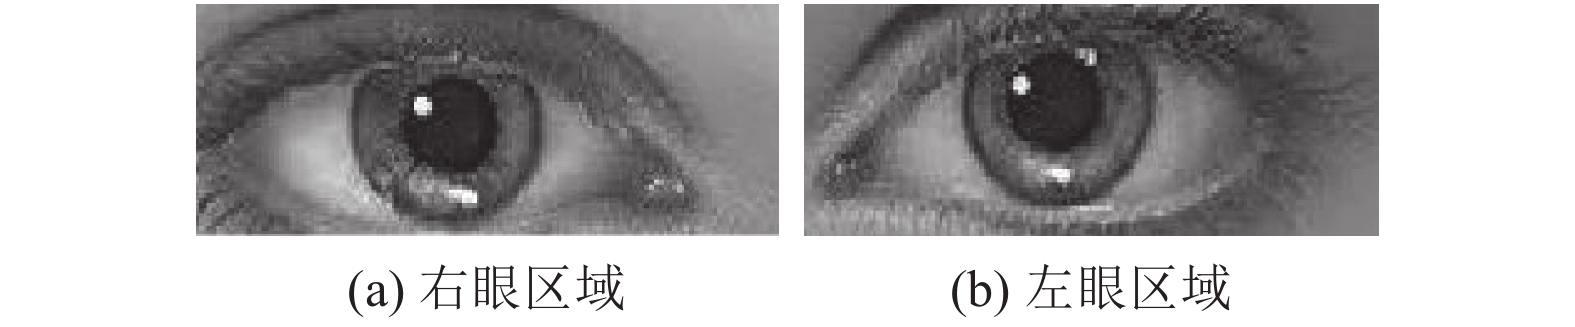 基于灰度积分投影与霍夫圆变换算法的人眼瞳距自动检测